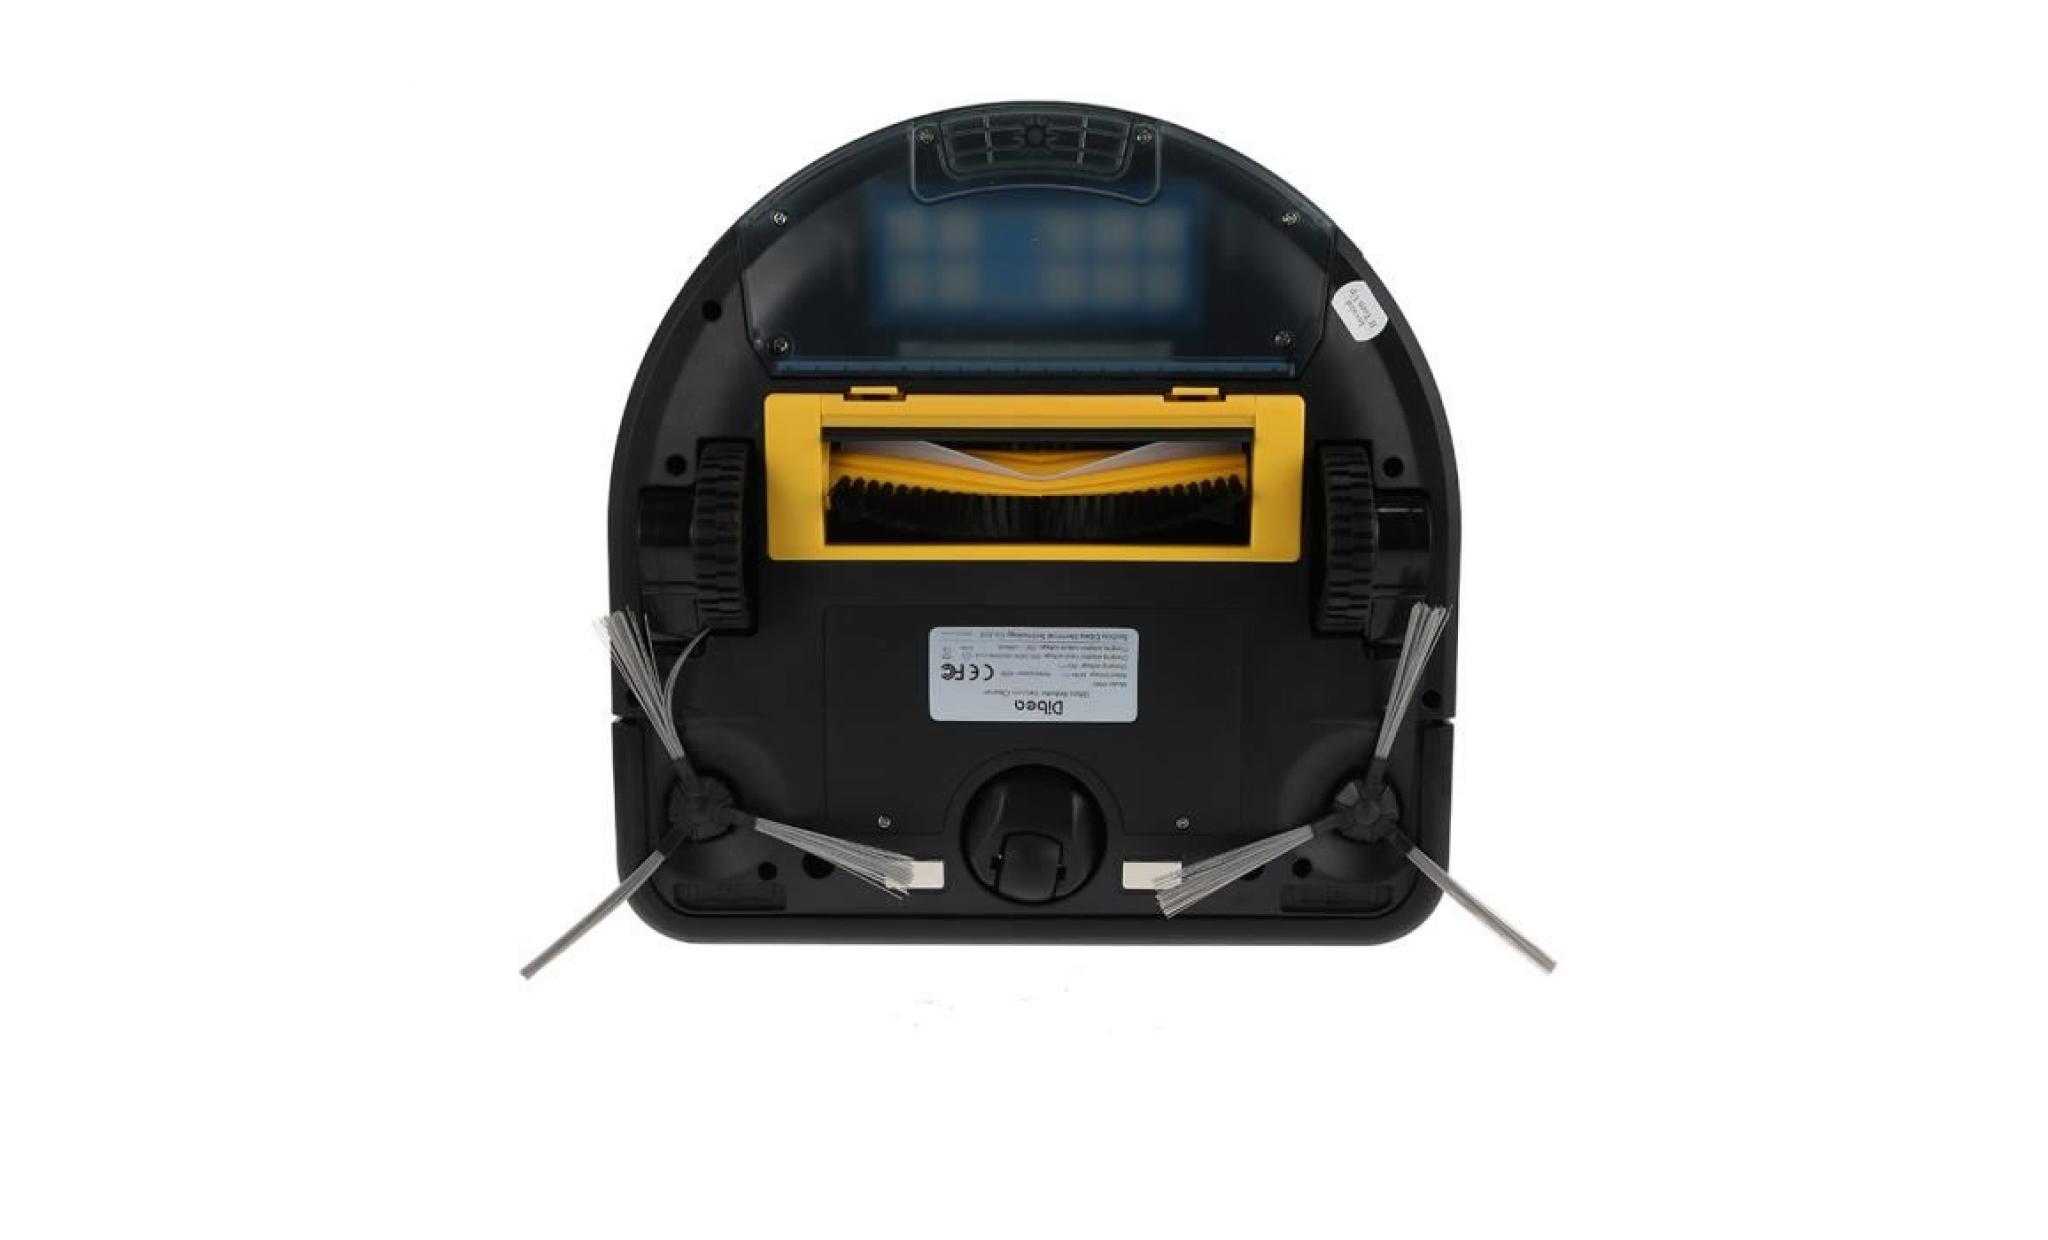 intelligente robot aspirateur balayeuse dibea d960 aspirateur domestique noir pas cher